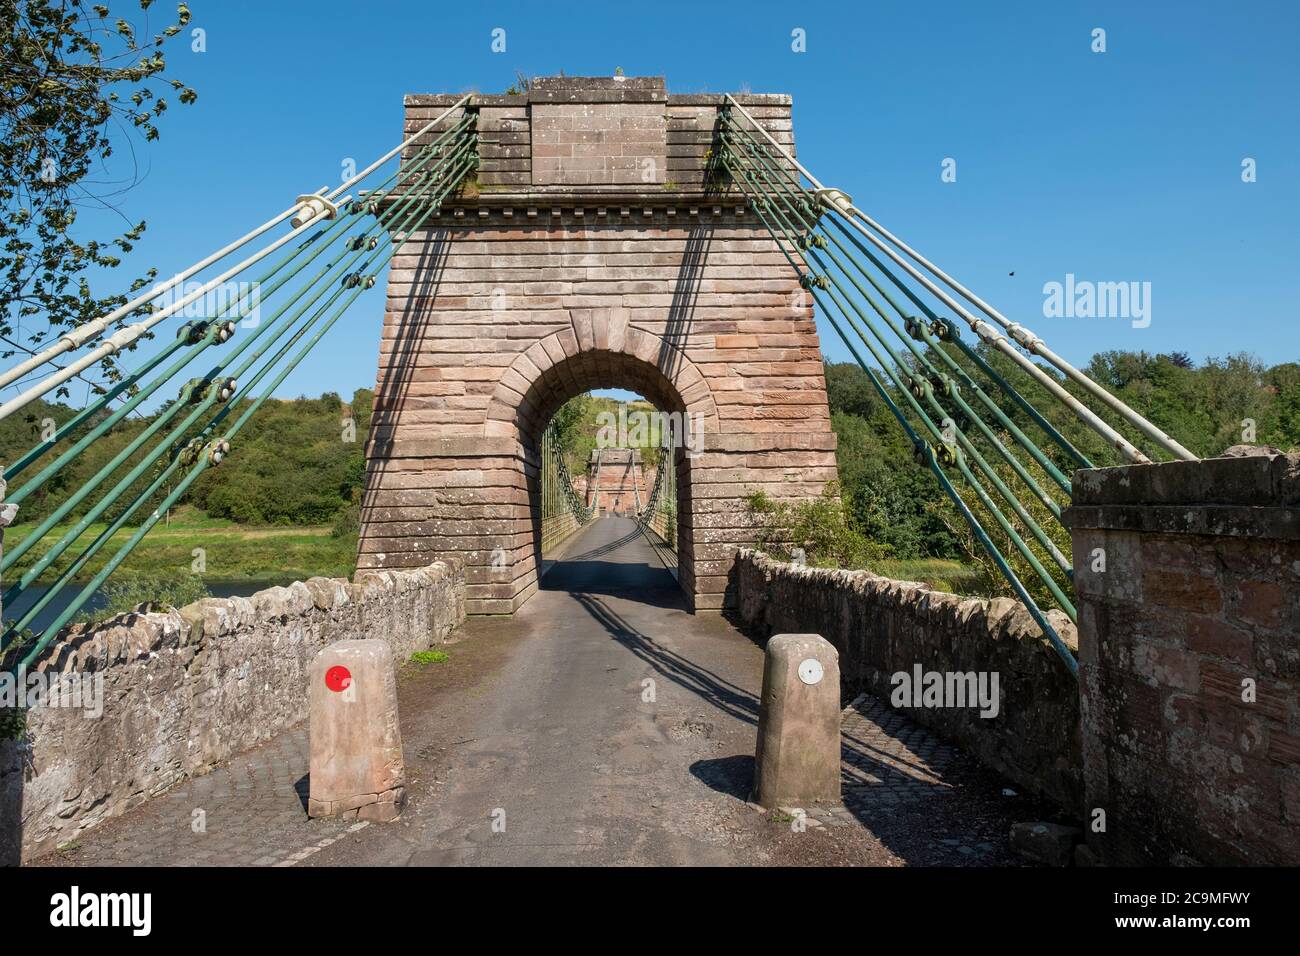 Le pont suspendu Union qui traverse la rivière Tweed entre Horncliffe, Northumberland, Angleterre et Fishwick, frontières écossaises, Écosse. Banque D'Images